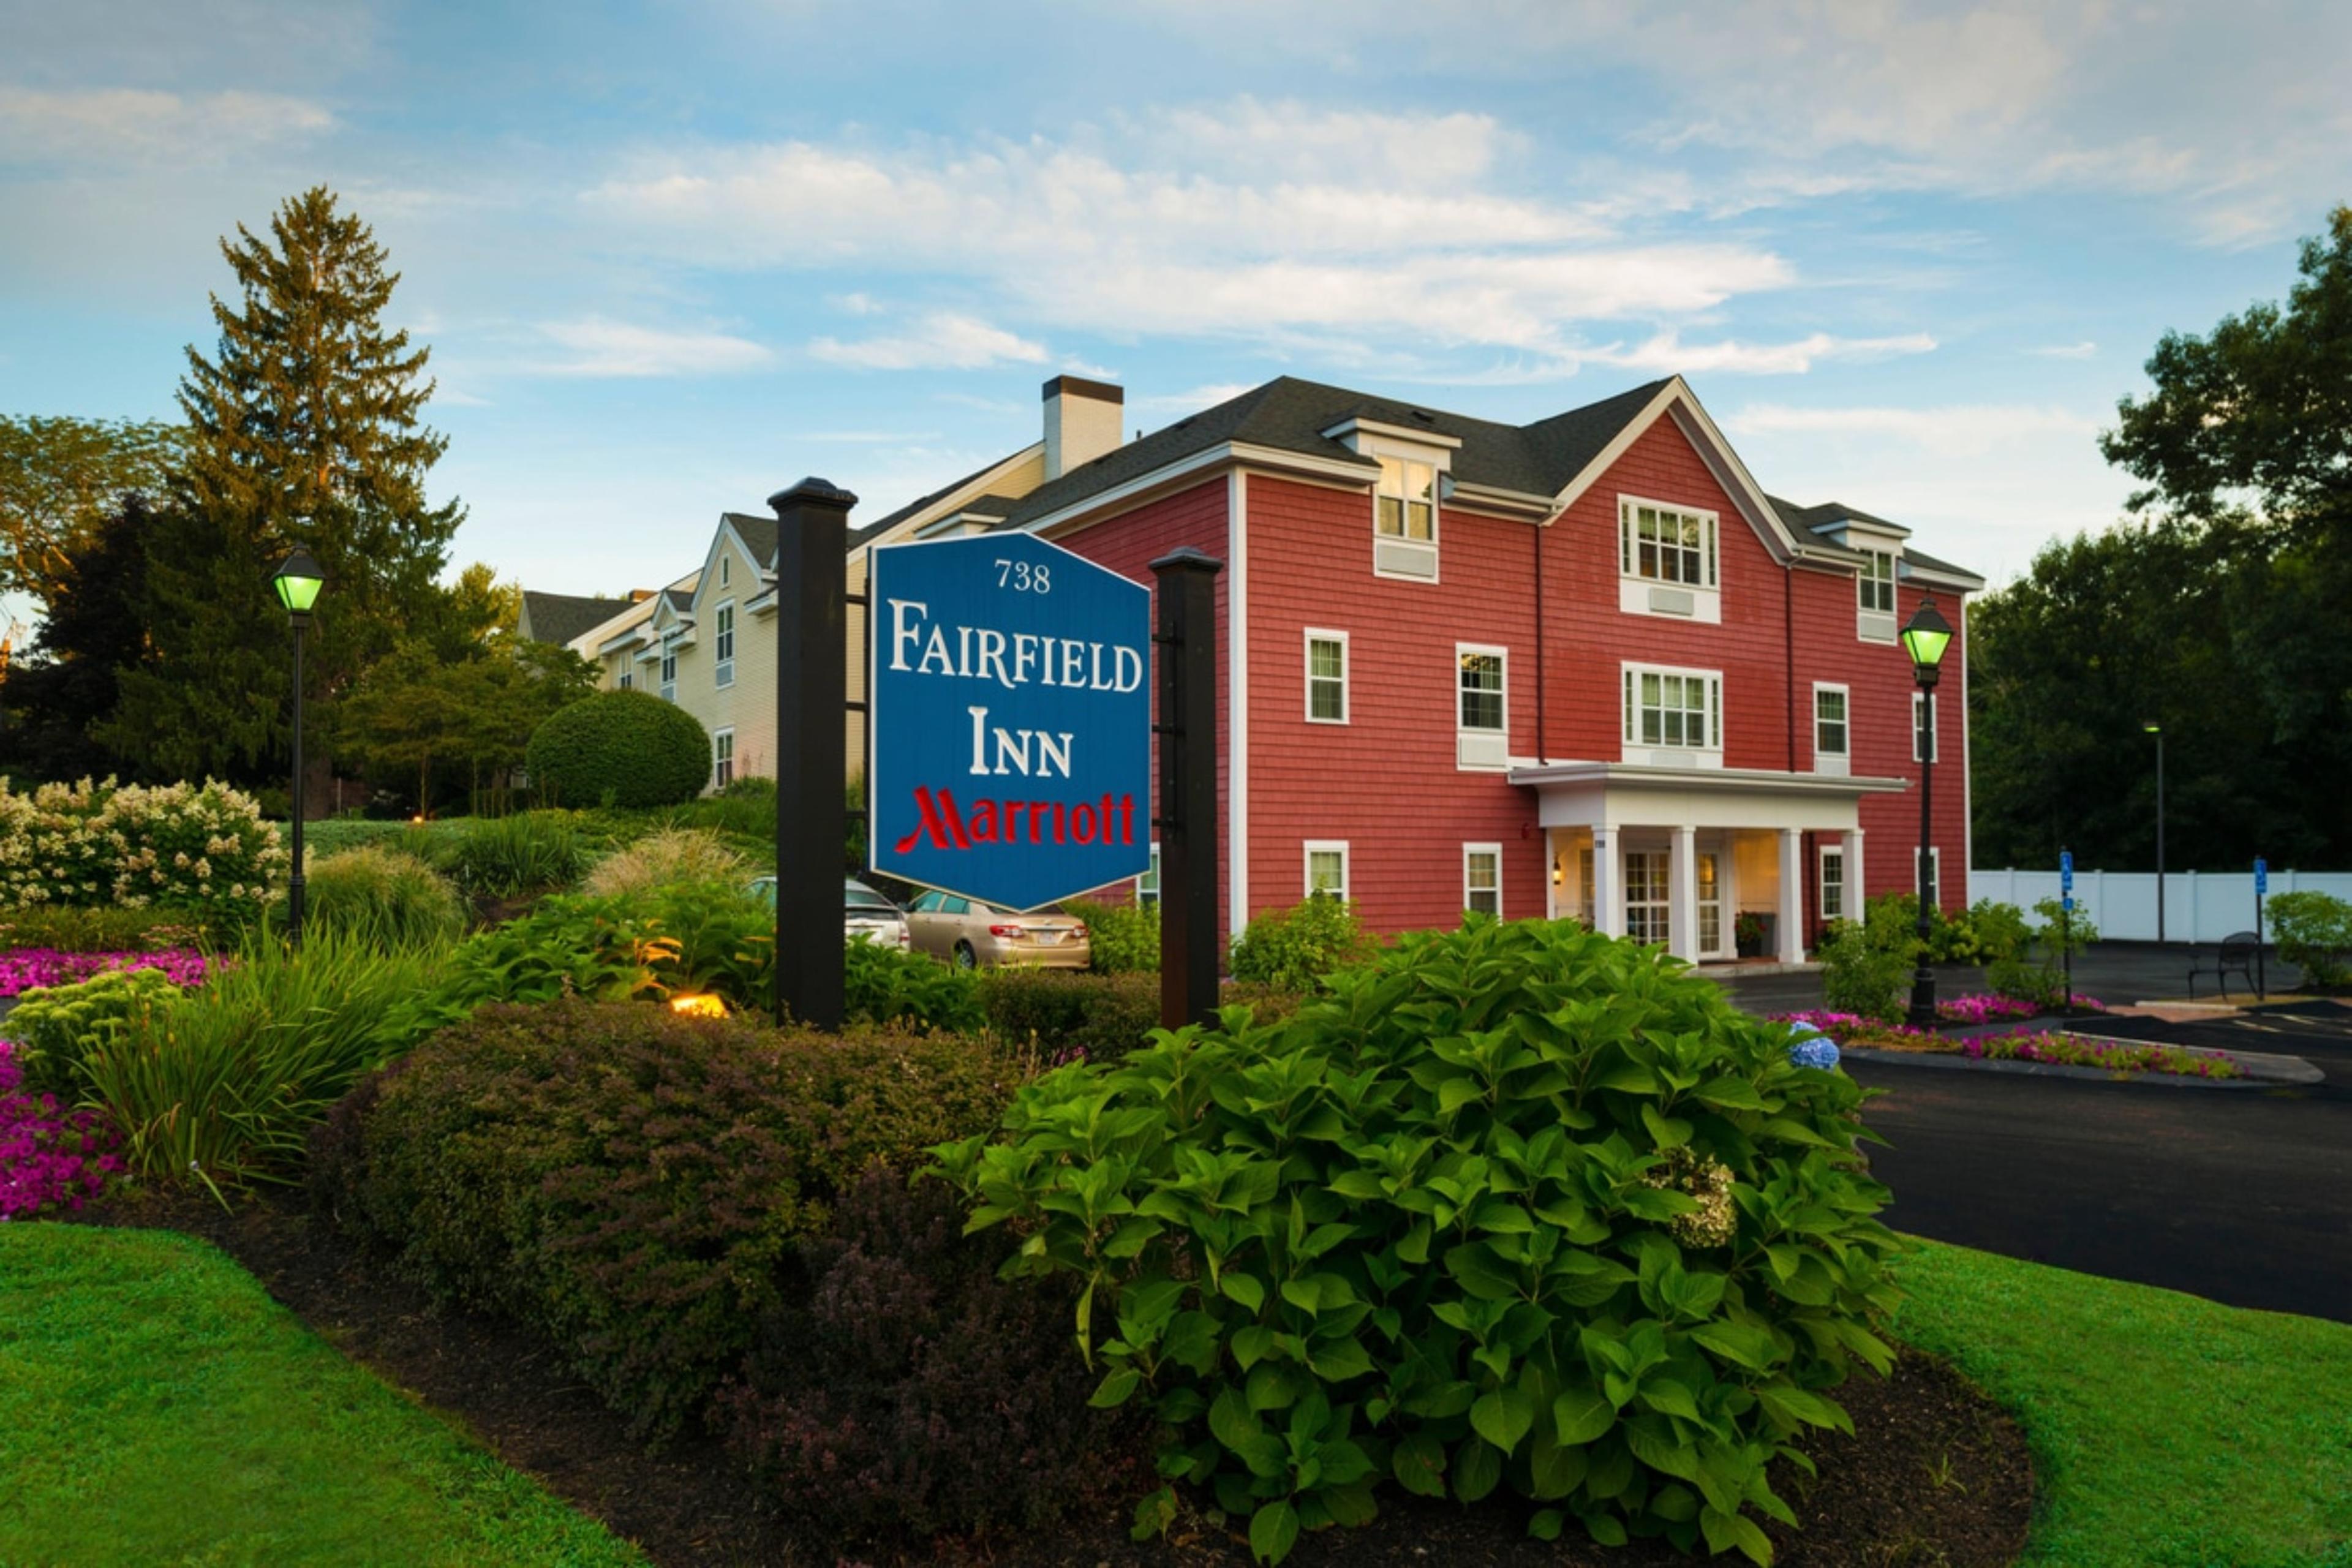 Fairfield Inn Boston Sudbury